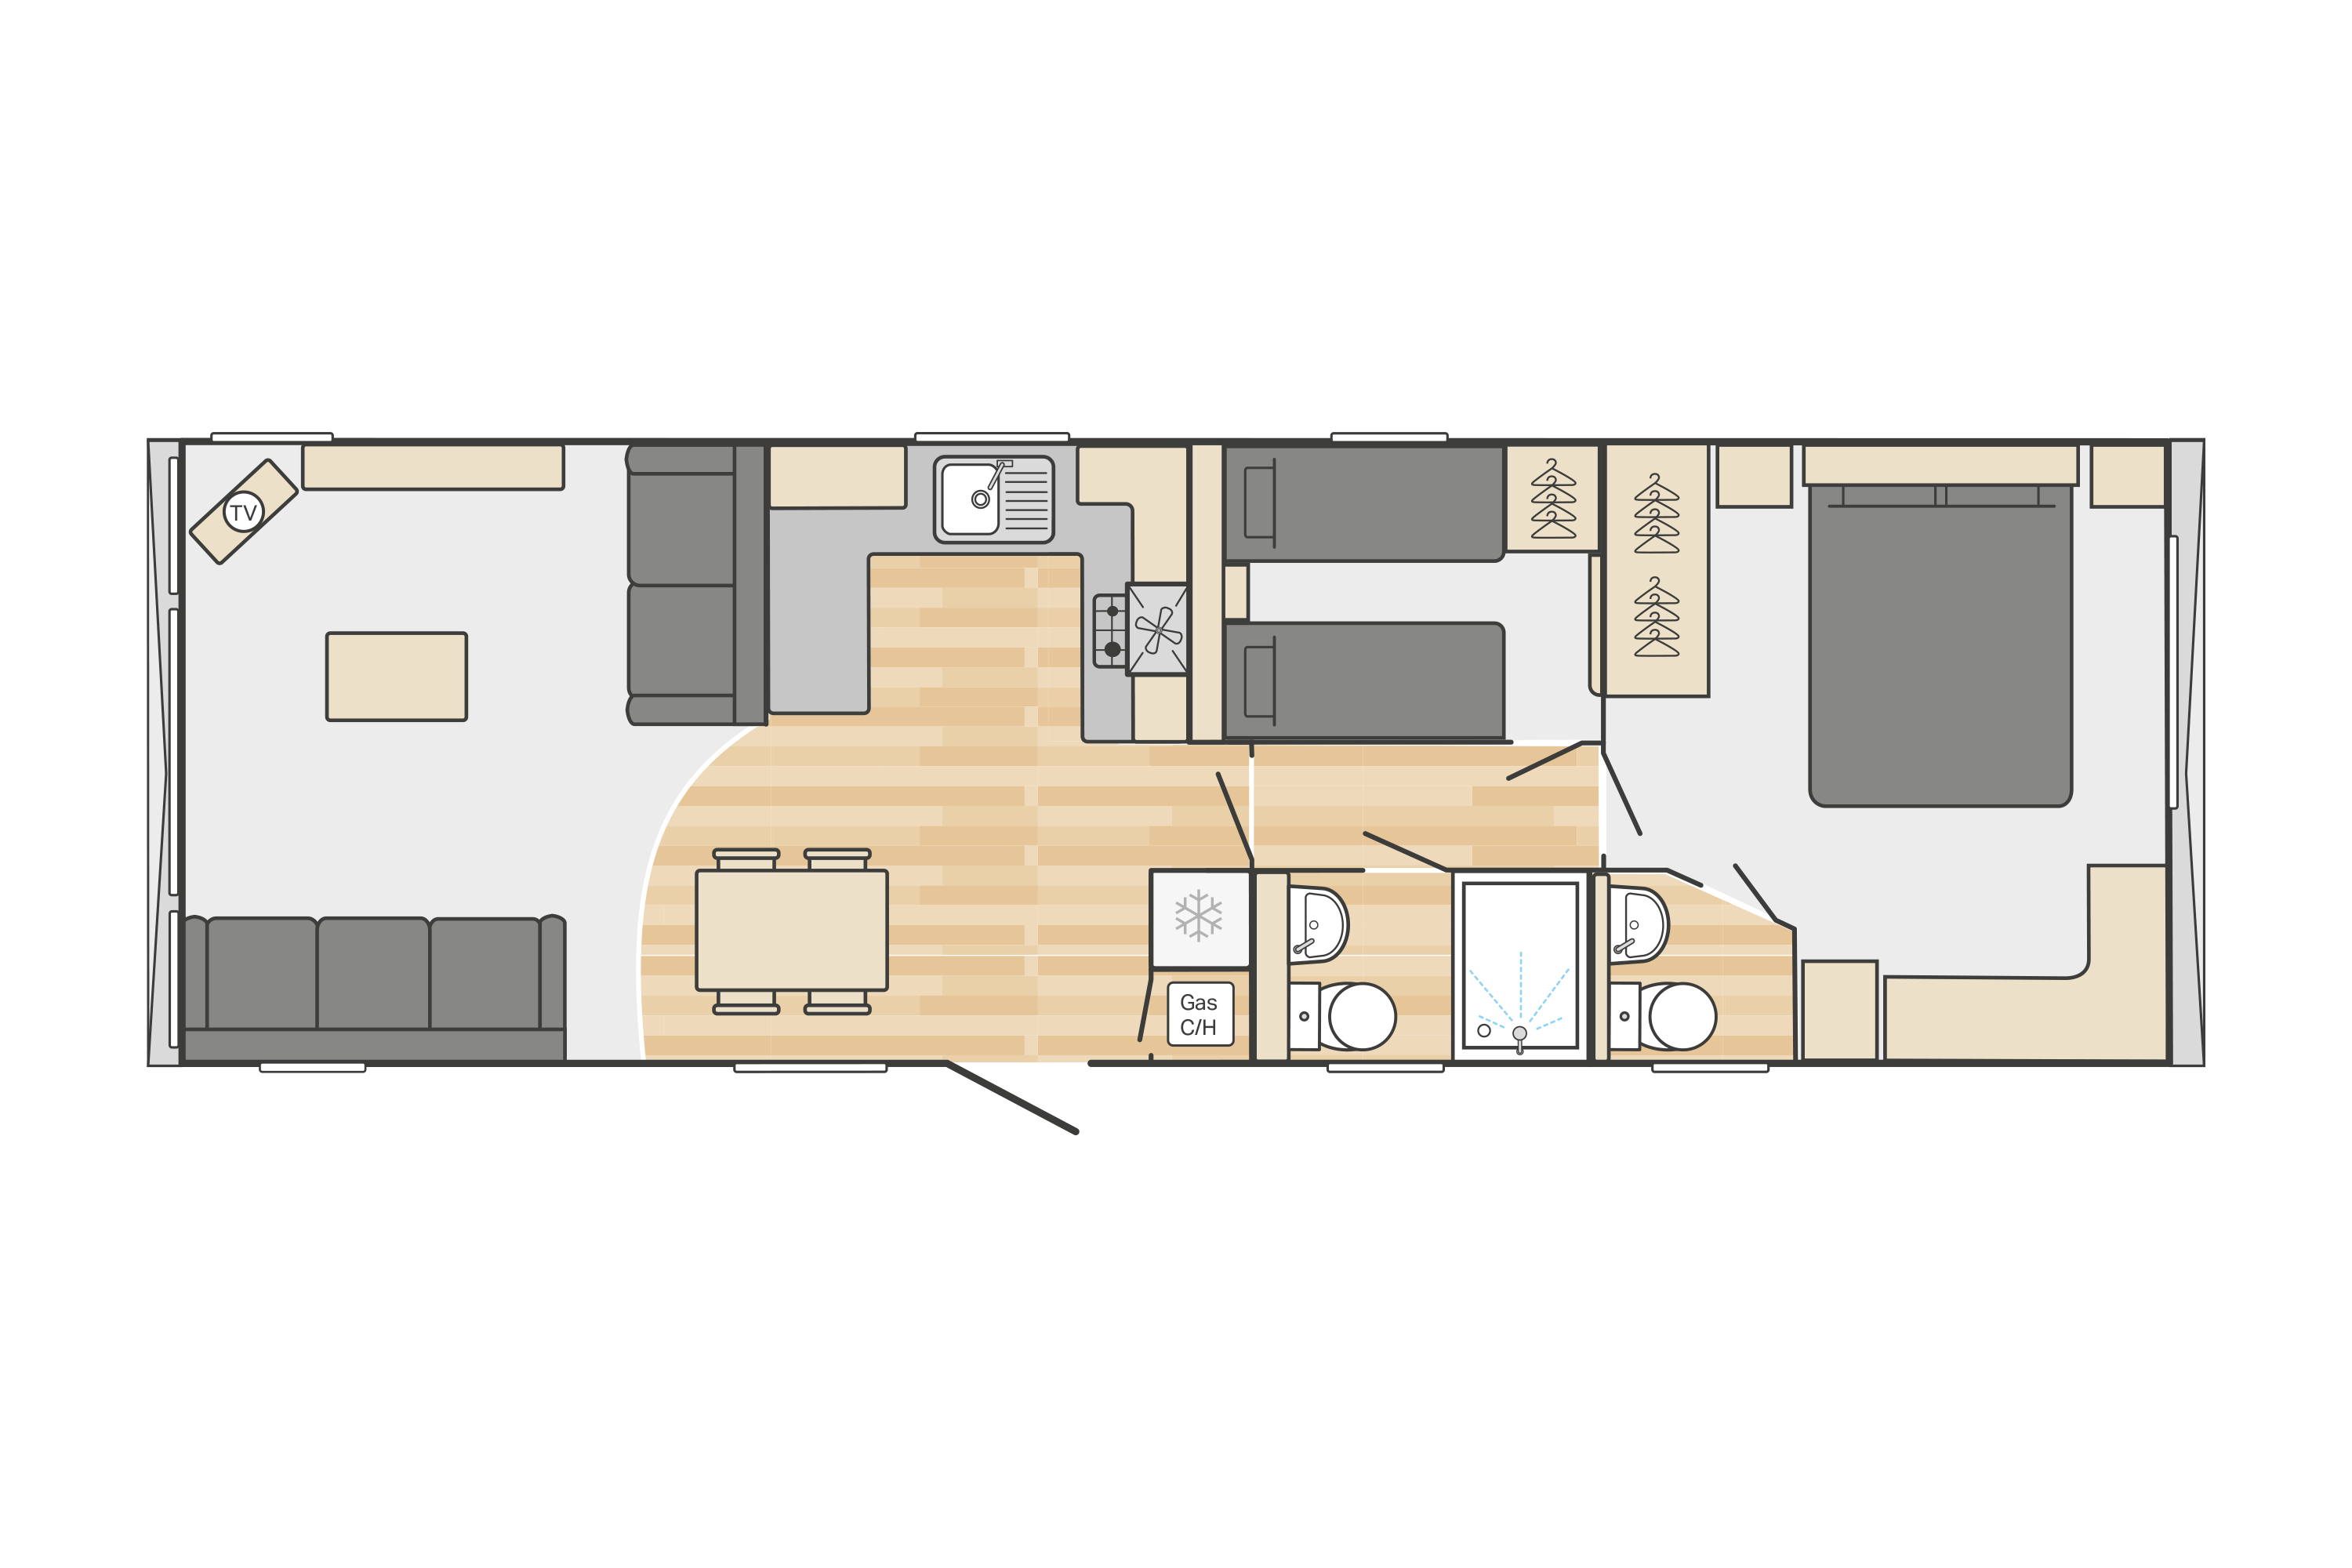 Bordeaux 38' x 12' 2 Bedroom floorplan